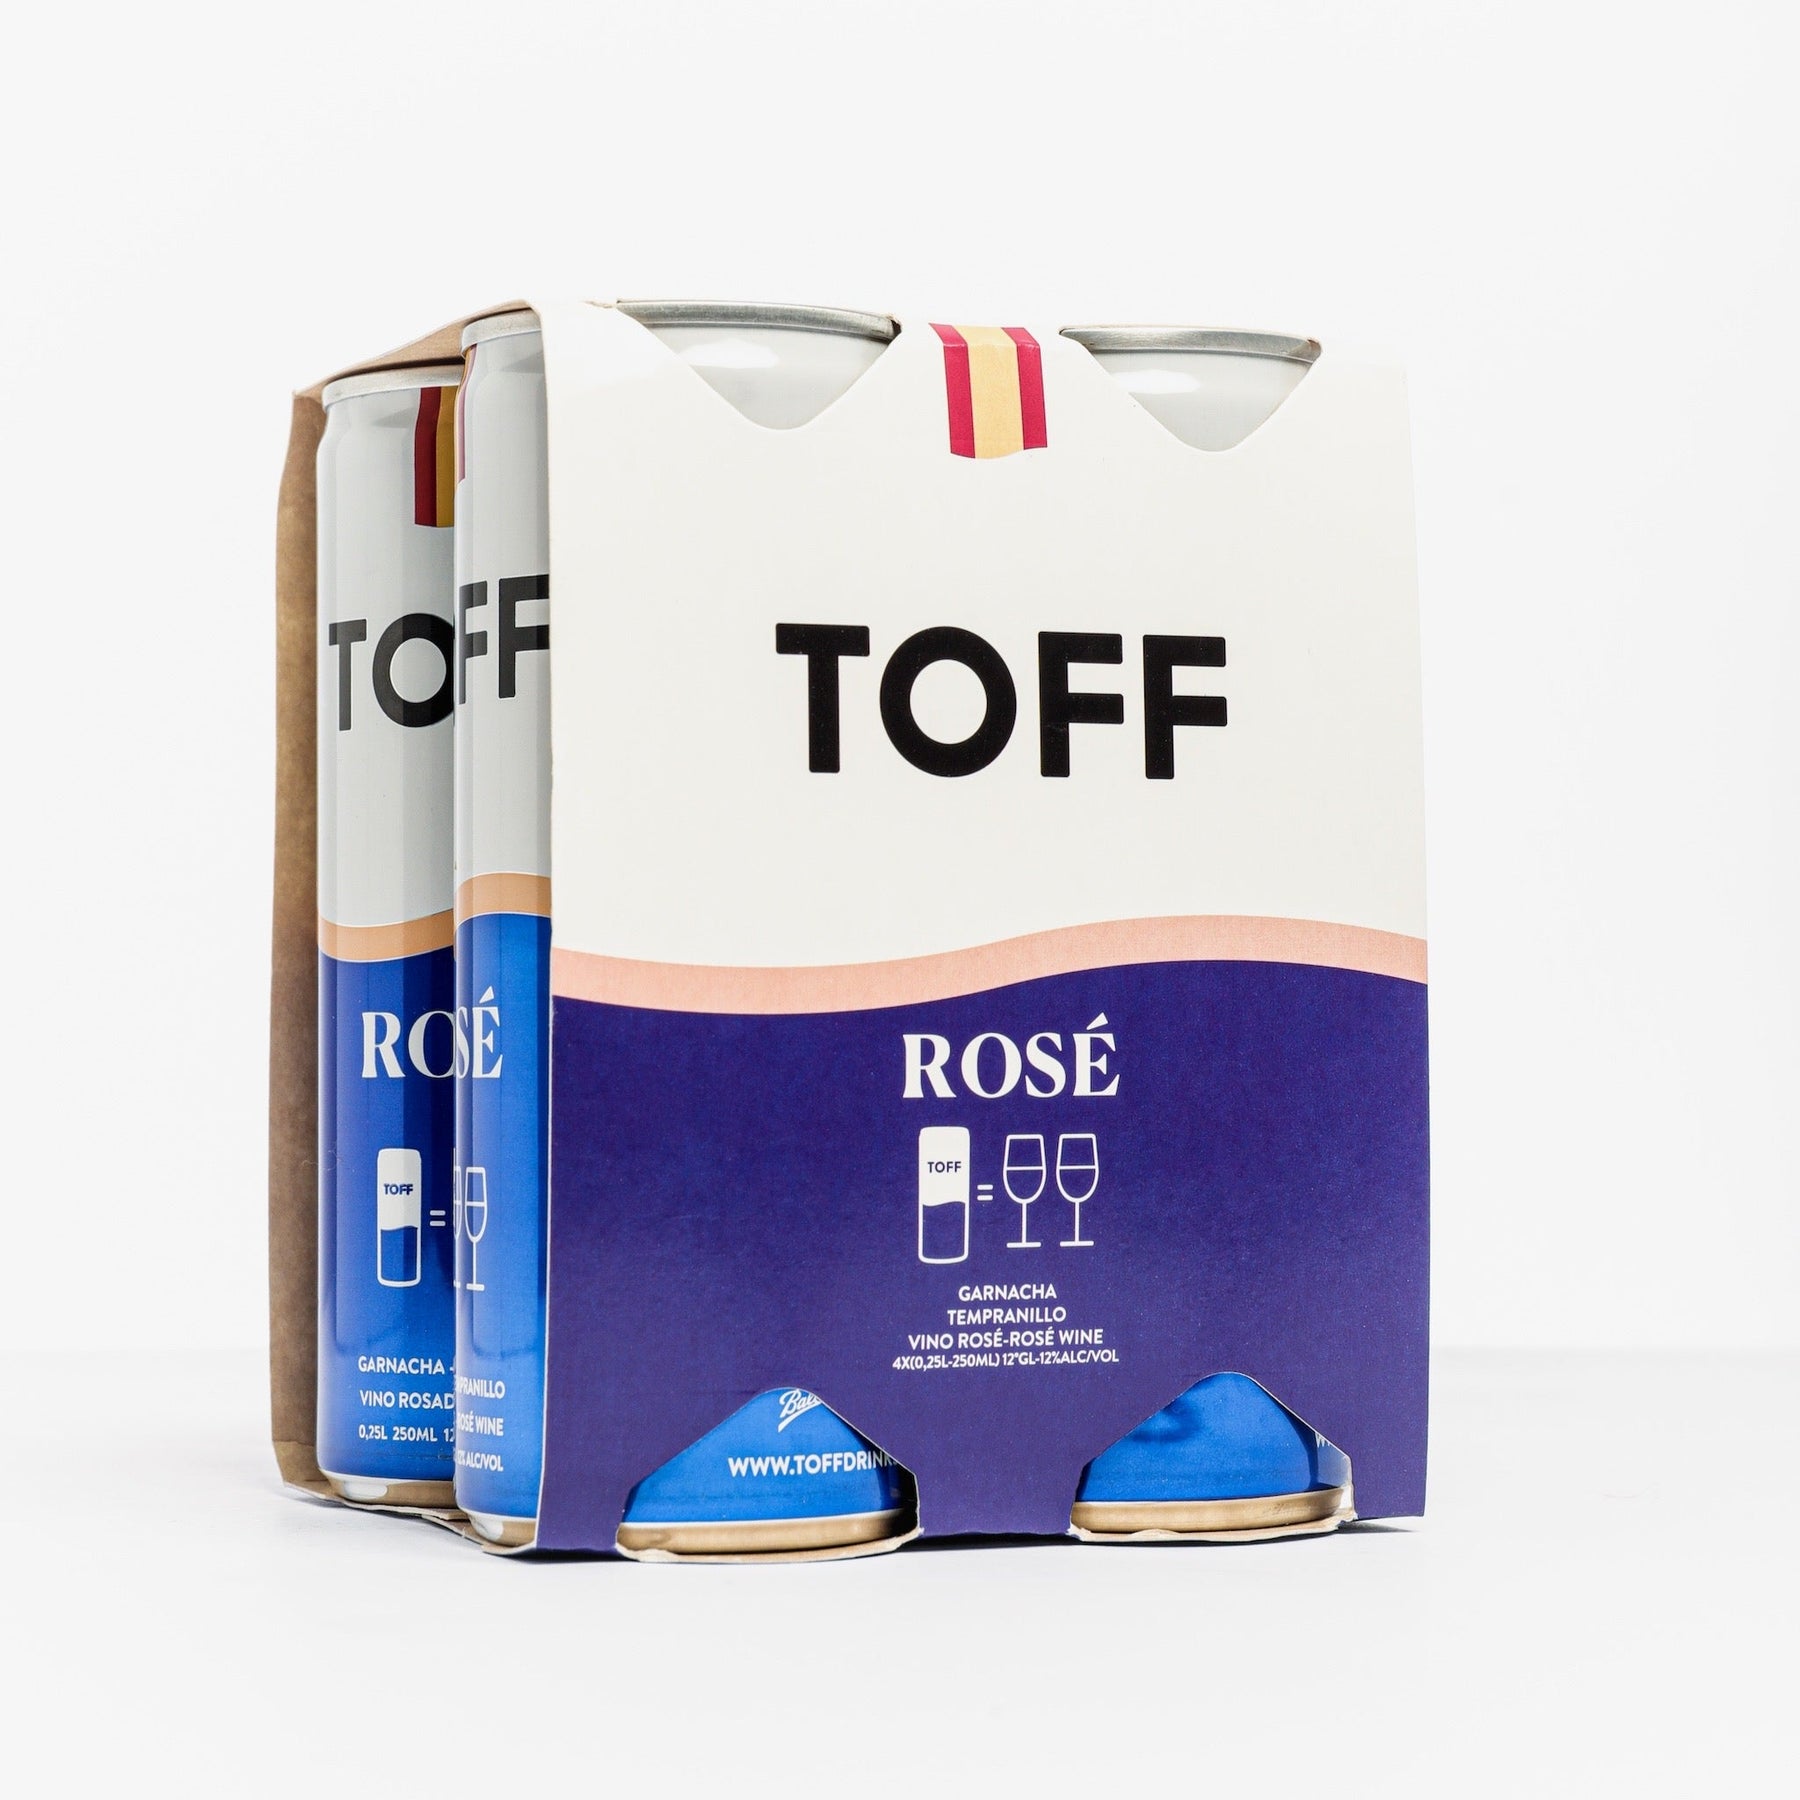 TOFF ROSE WINE